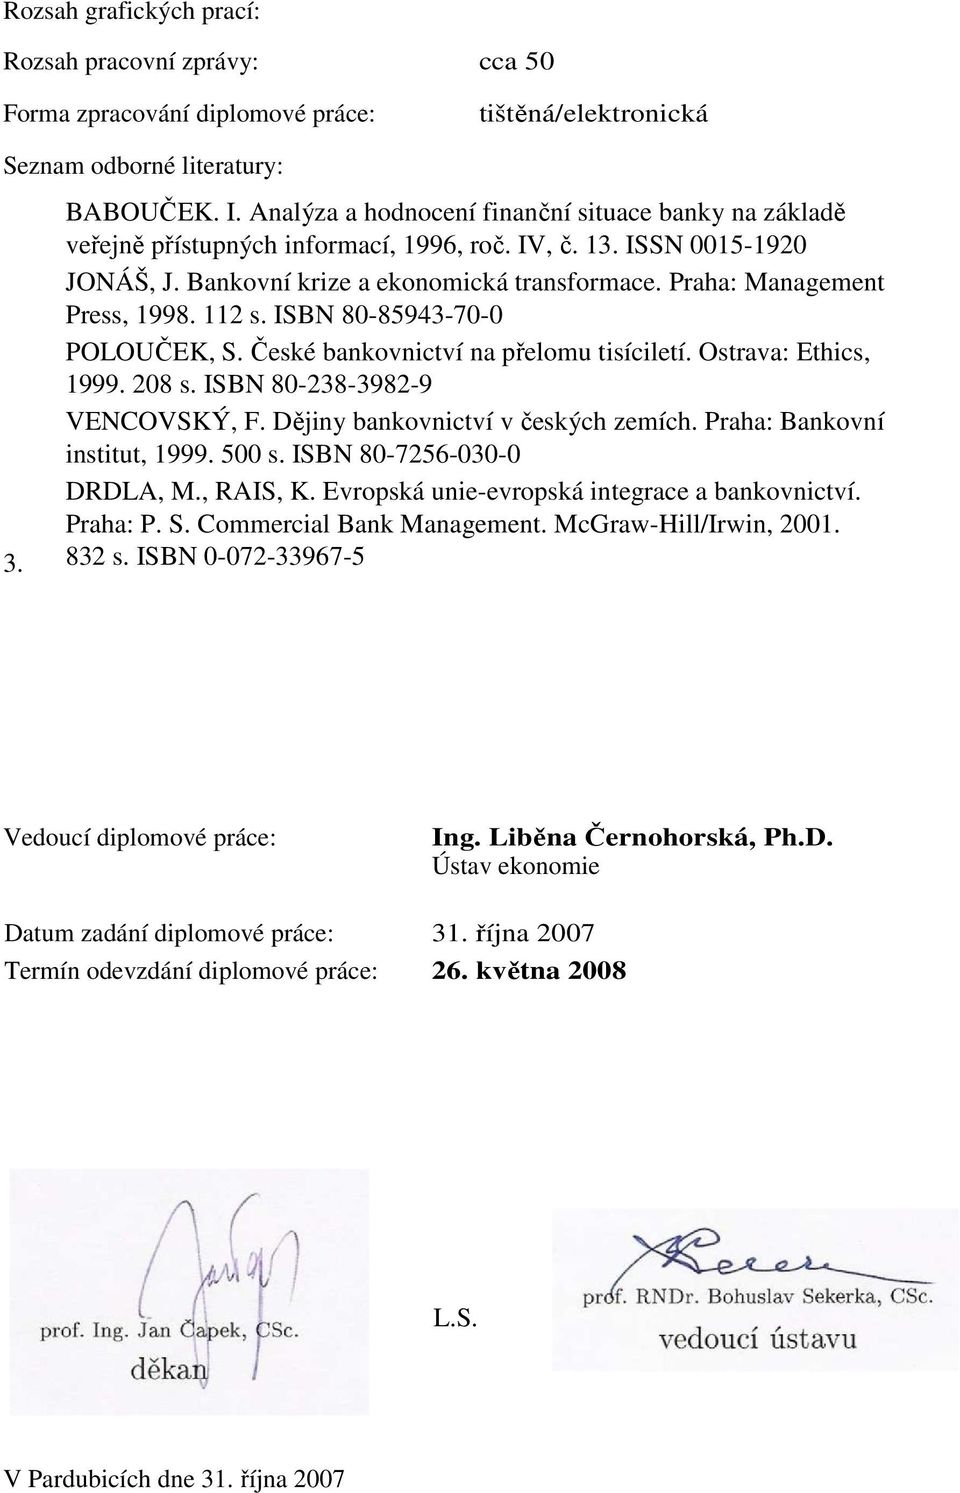 Praha: Management Press, 1998. 112 s. ISBN 80-85943-70-0 POLOUČEK, S. České bankovnictví na přelomu tisíciletí. Ostrava: Ethics, 1999. 208 s. ISBN 80-238-3982-9 VENCOVSKÝ, F.